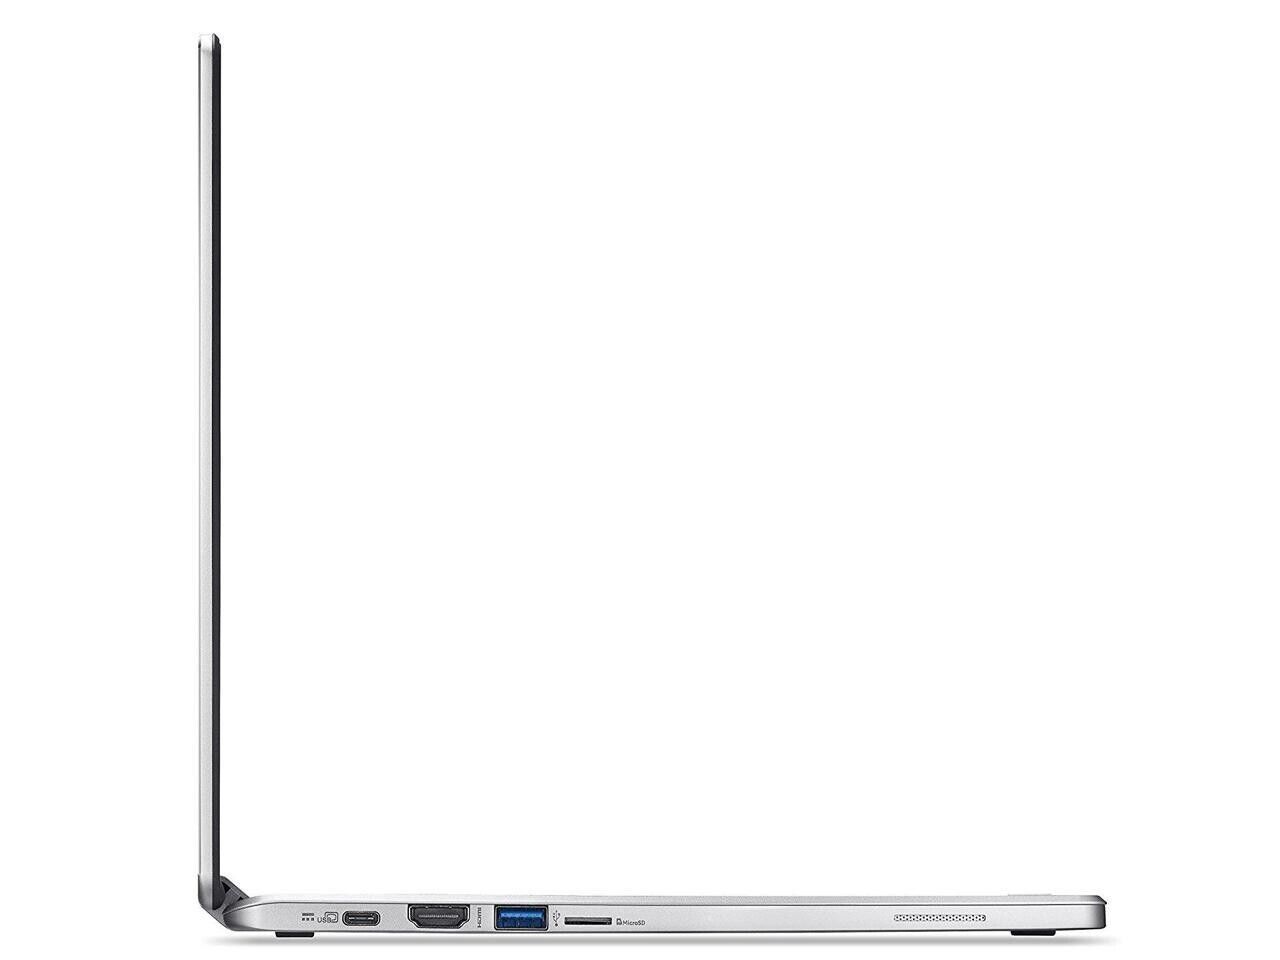 Acer Chromebook R 13 CB5-312T-K5X4 13.3"